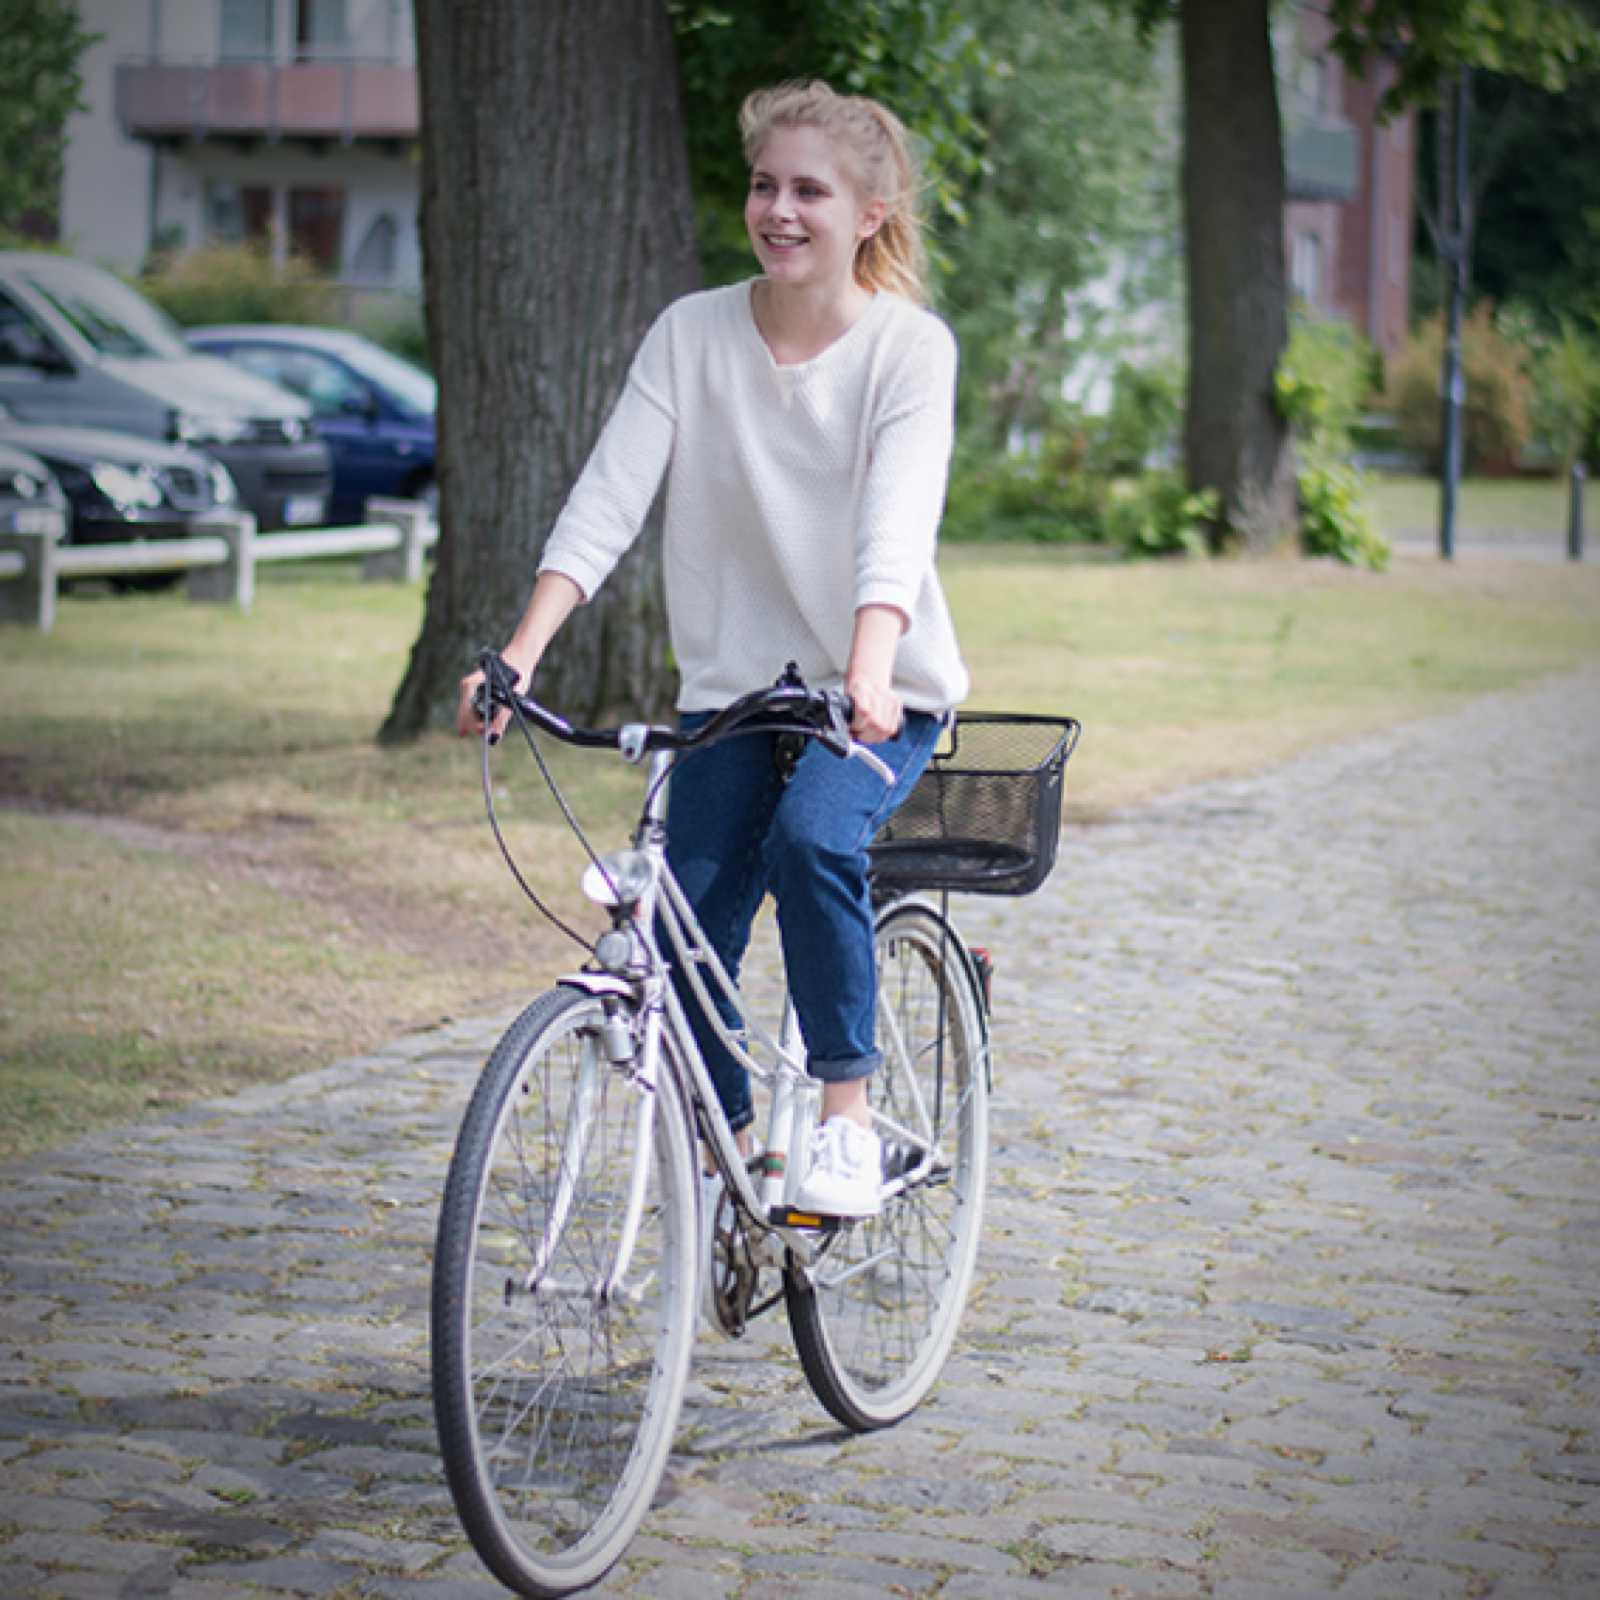 Vom 31. Mai bis zum 7. September zählt jeder auf dem Fahrrad zurückgelegte Kilometer für den Wettbewerb FHar Rad! – egal ob dienstlich oder in der Freizeit. (Foto und Teaserbild: FH Münster/Fabian Puller)